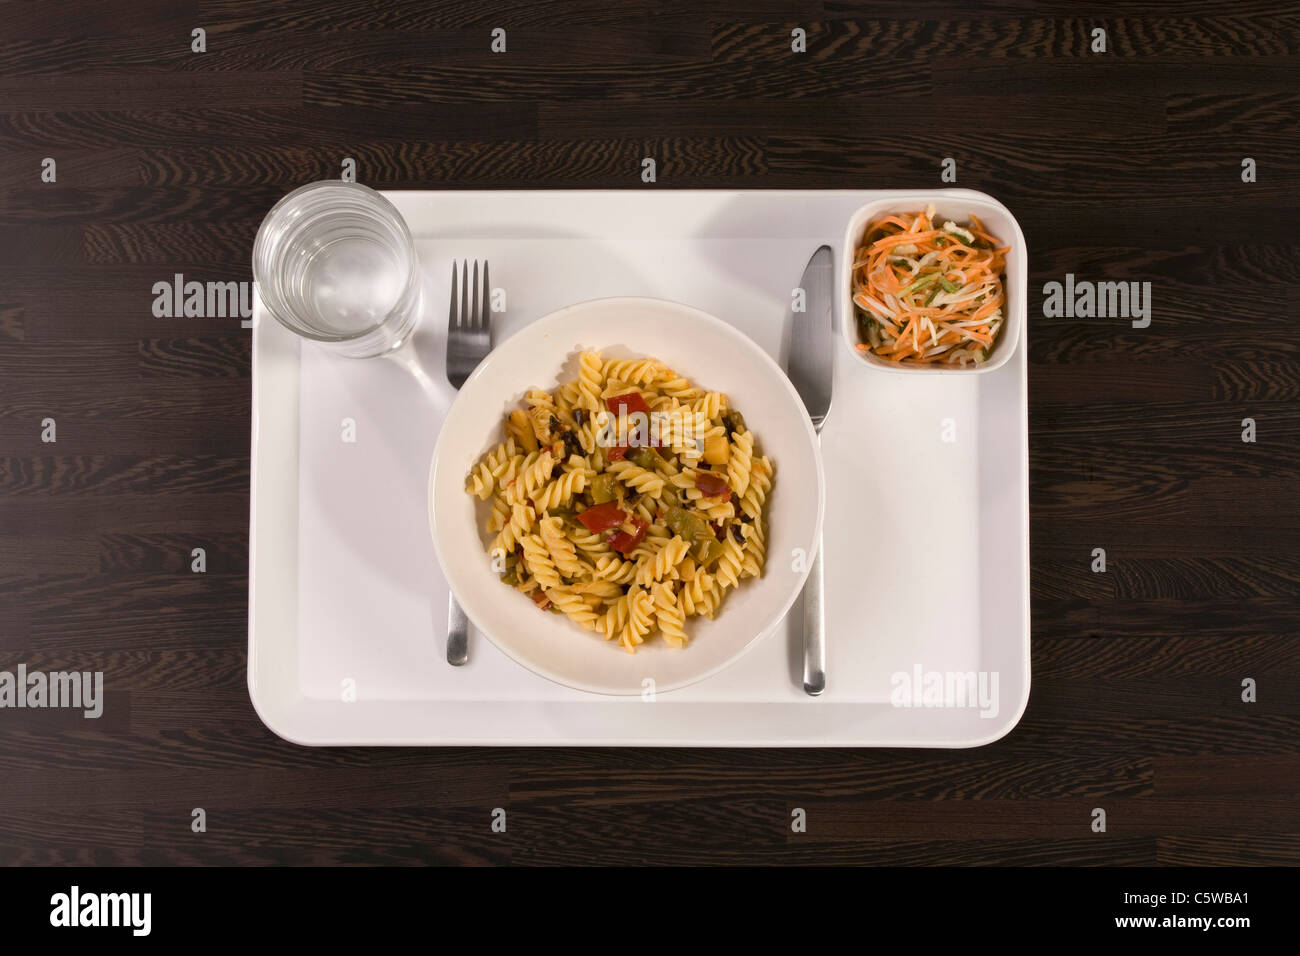 Piatto di pasta e insalata sul vassoio, vista in elevazione Foto Stock